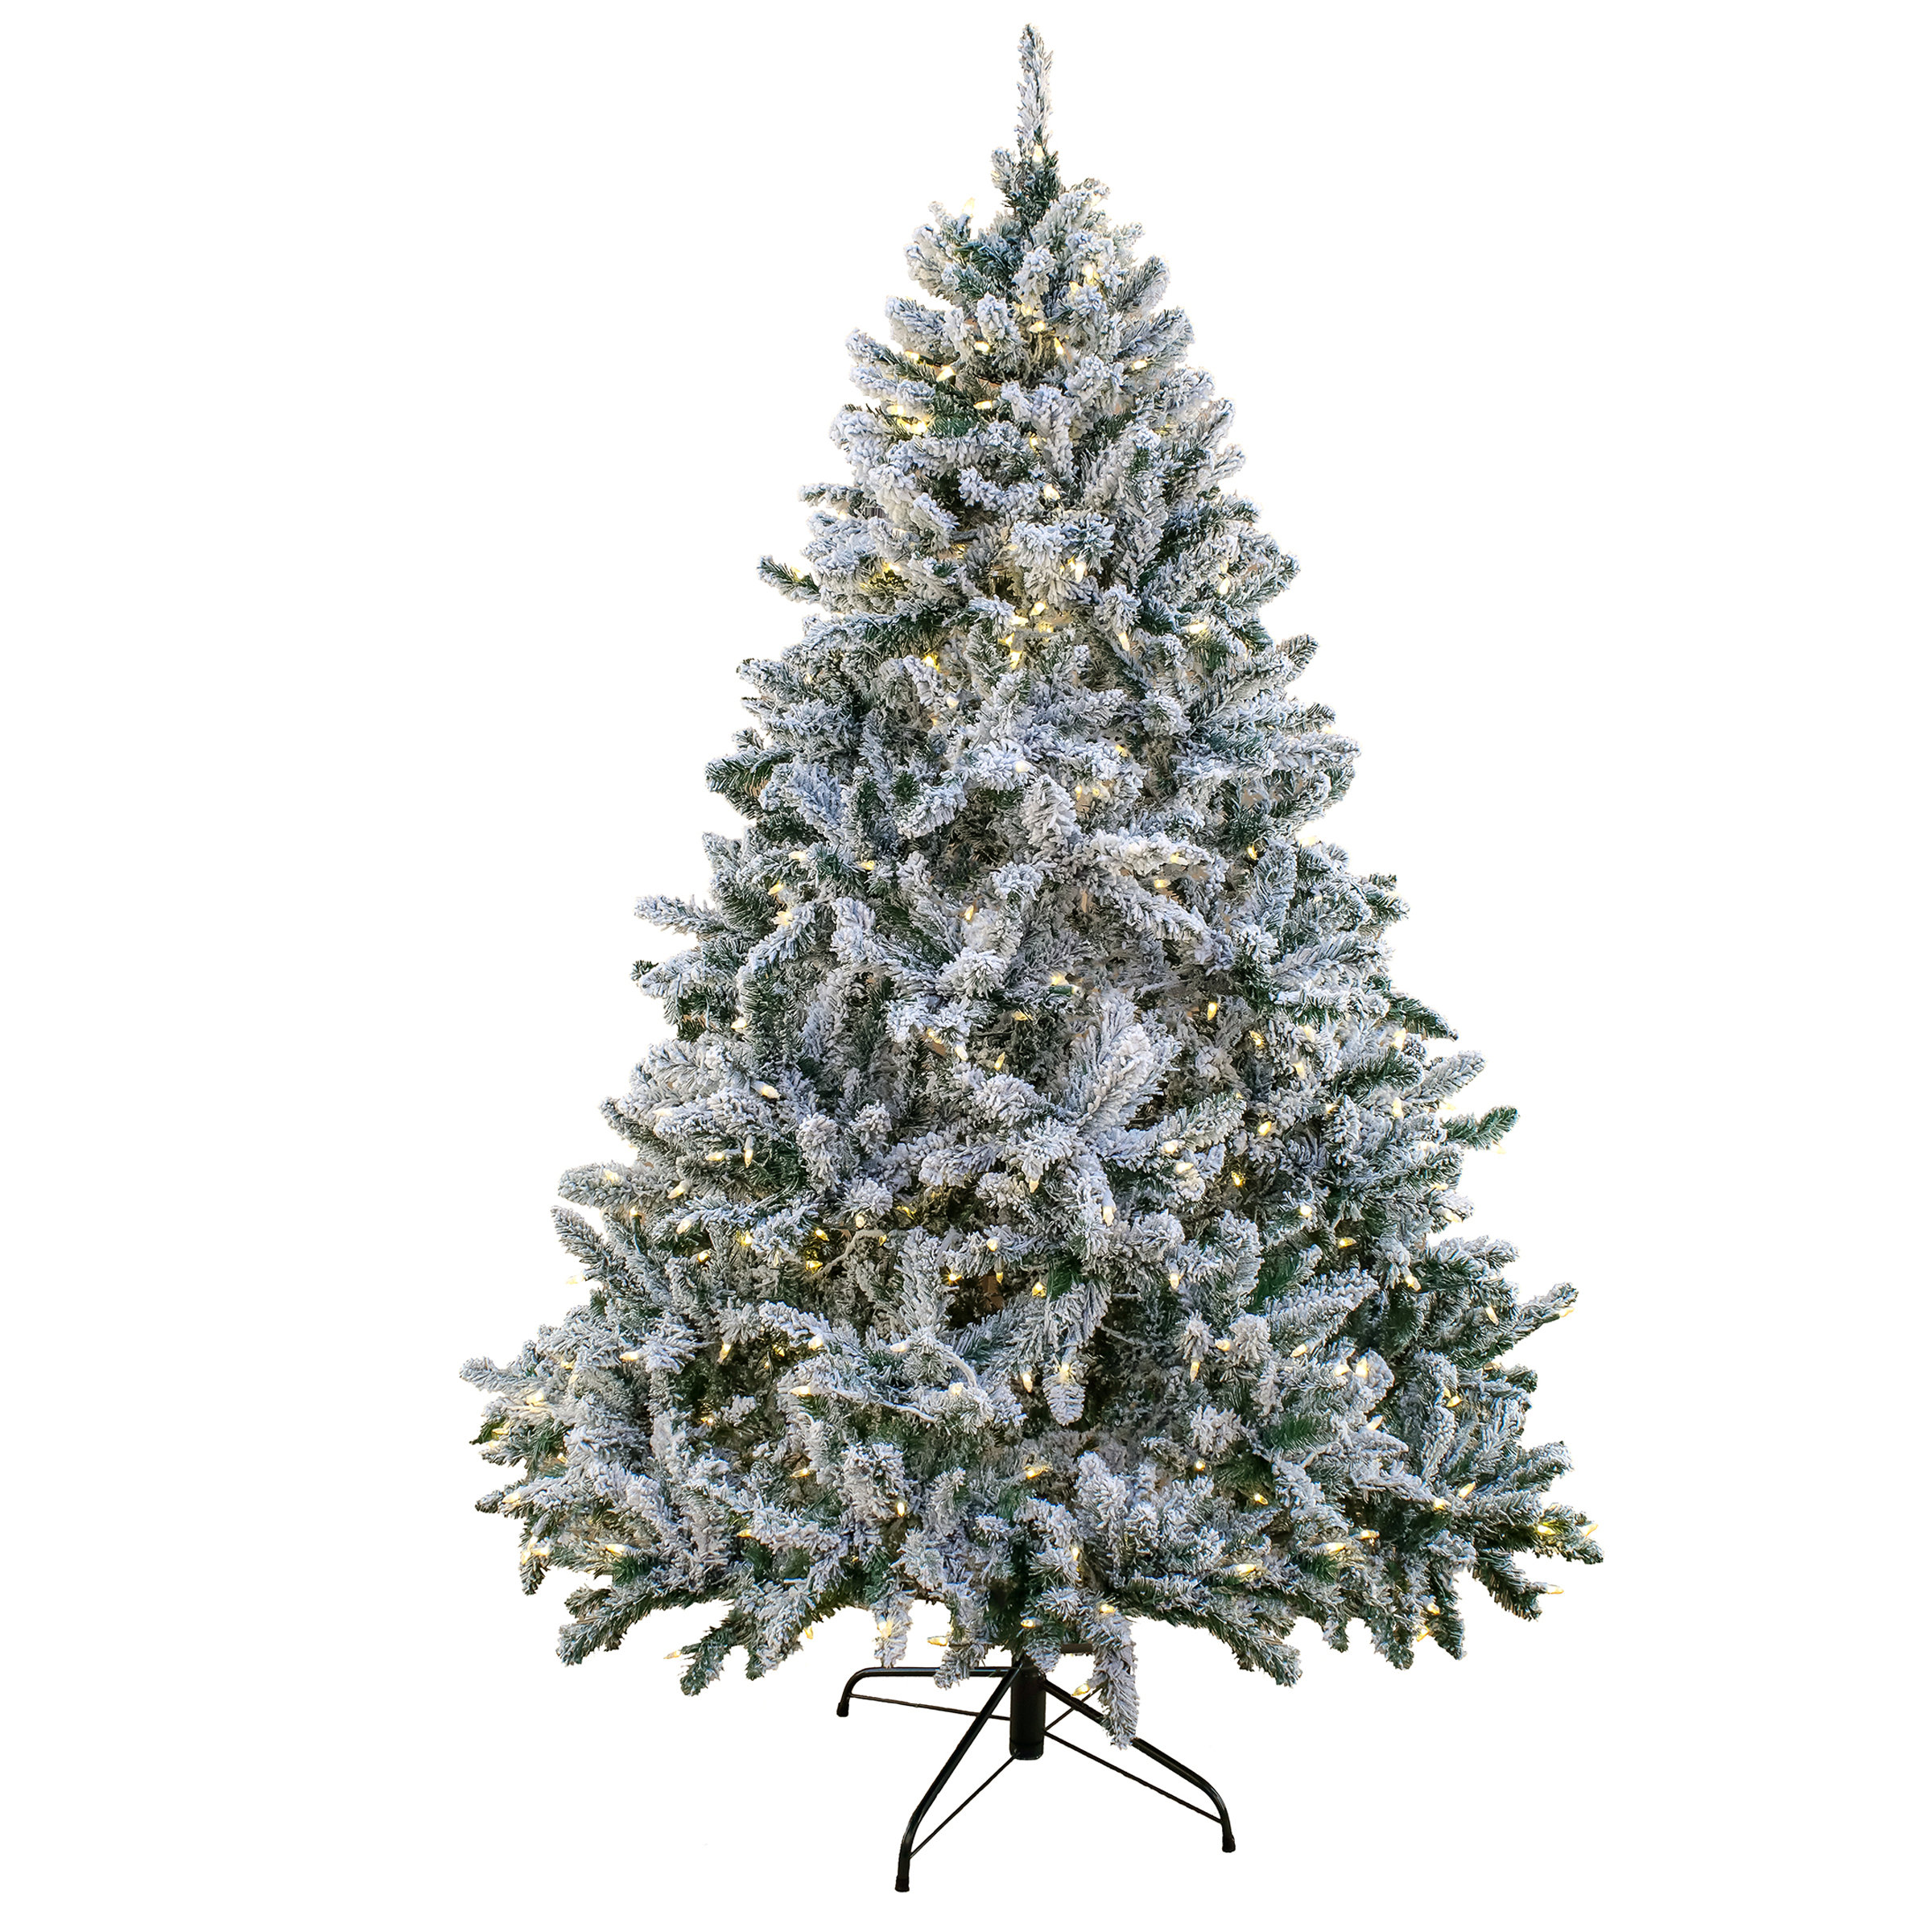 https://assets.wfcdn.com/im/98869549/compr-r85/2193/219314285/108-h-green-fir-christmas-tree-with-1200-led-lights.jpg